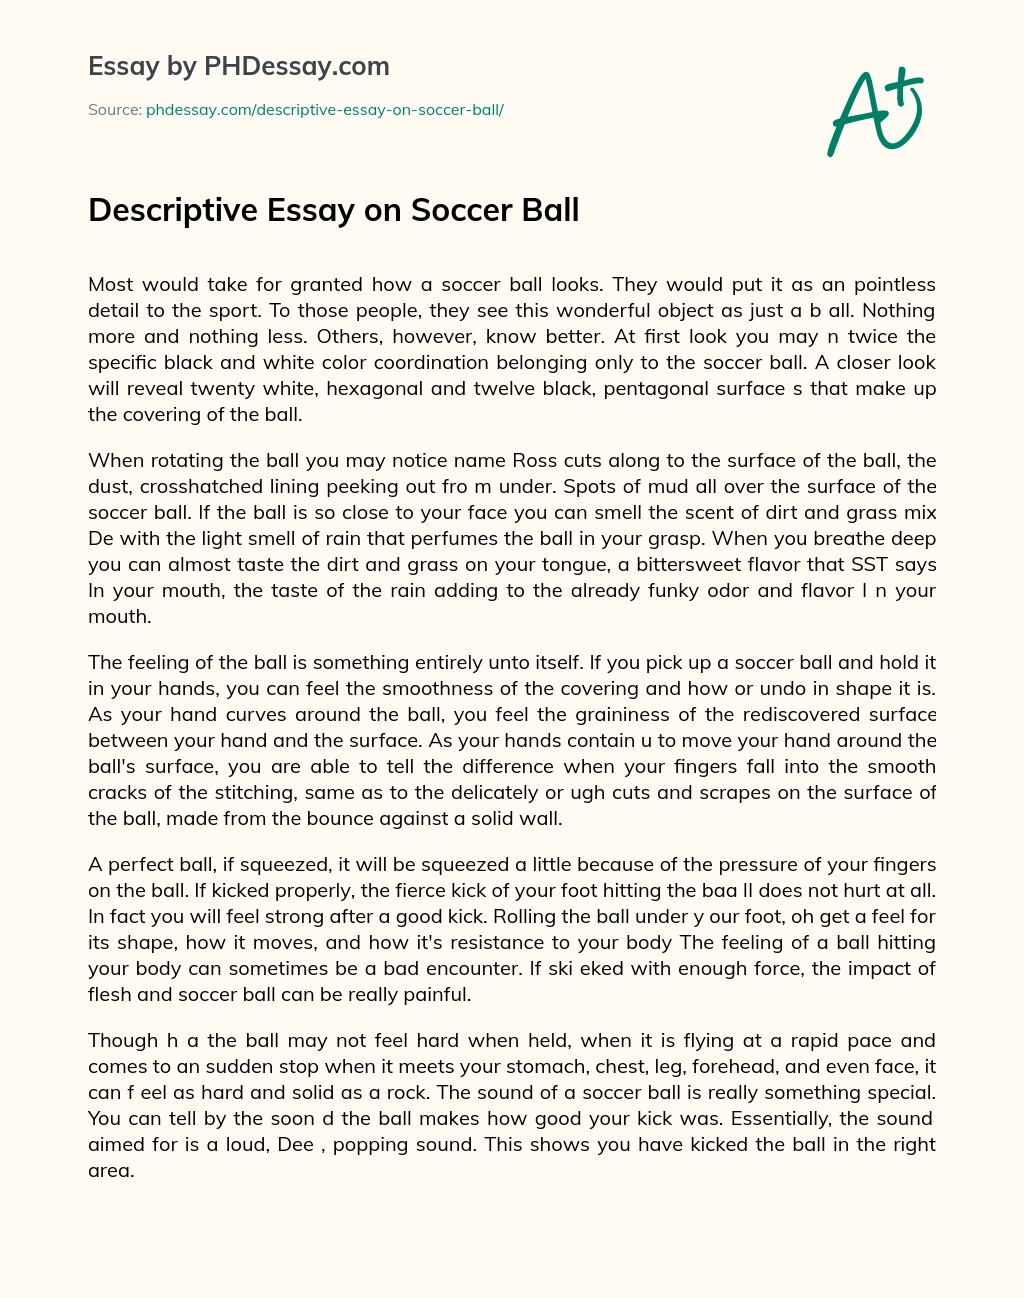 Descriptive Essay on Soccer Ball essay